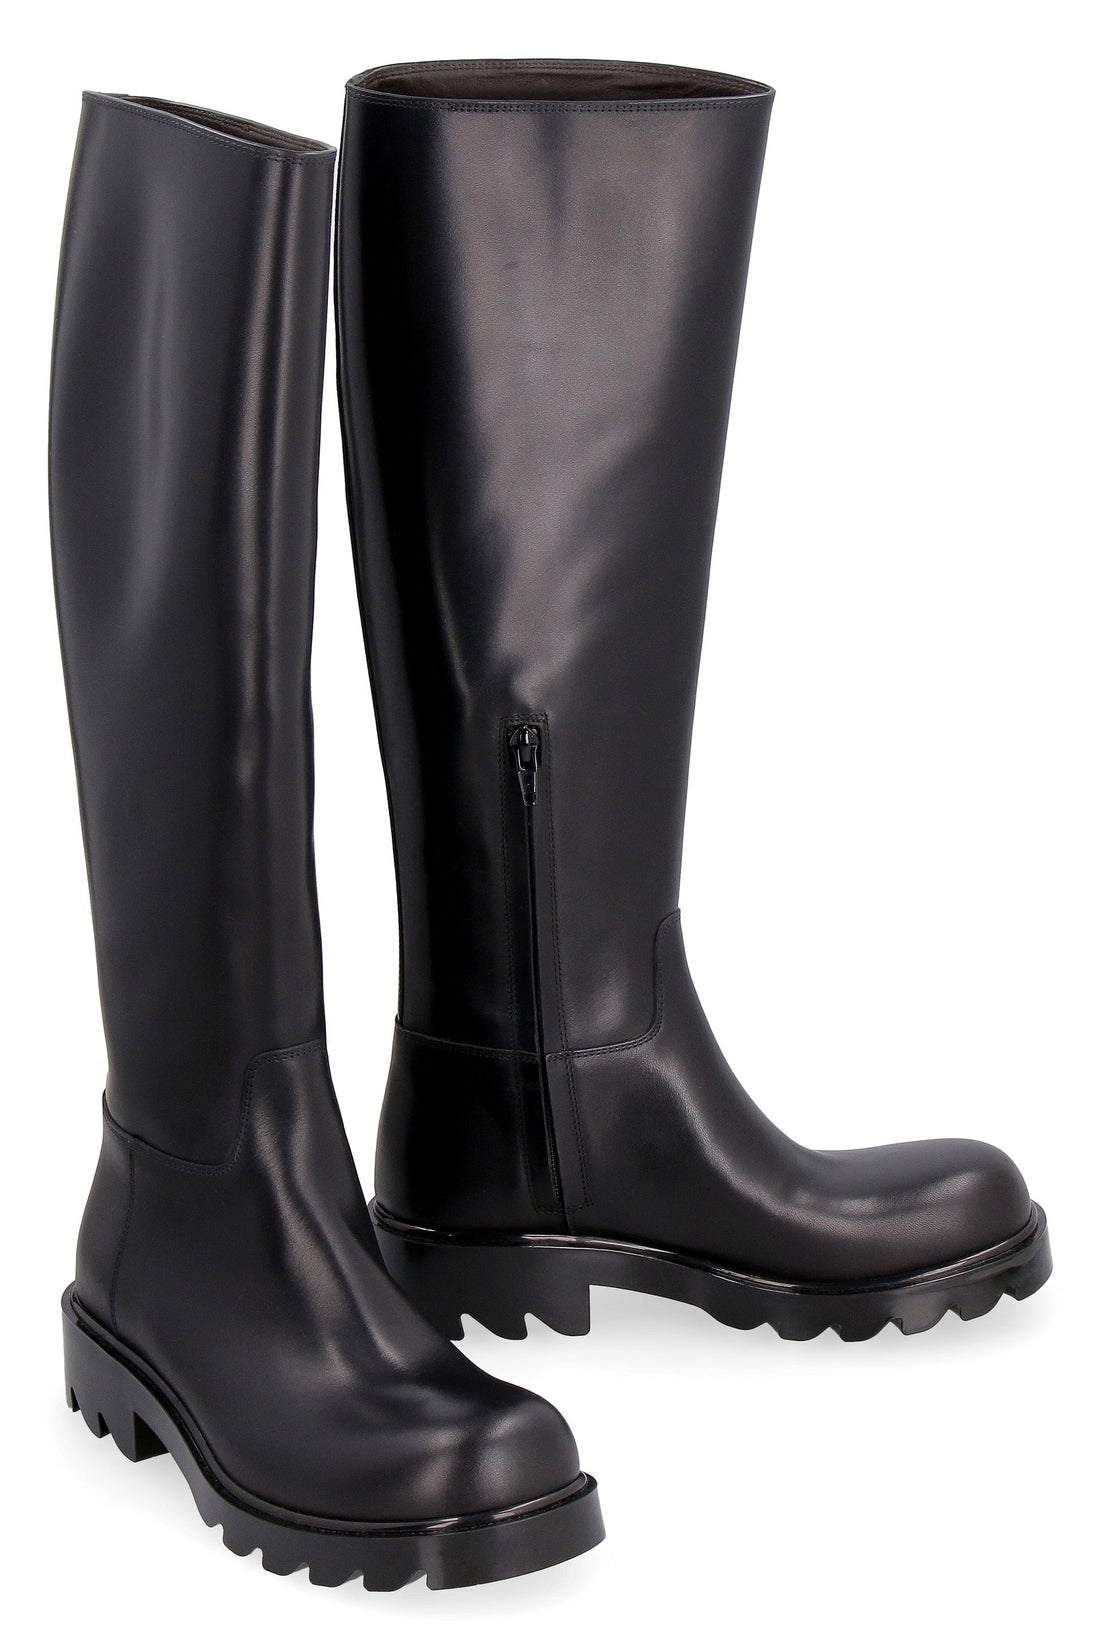 Bottega Veneta-OUTLET-SALE-Strut leather boots-ARCHIVIST